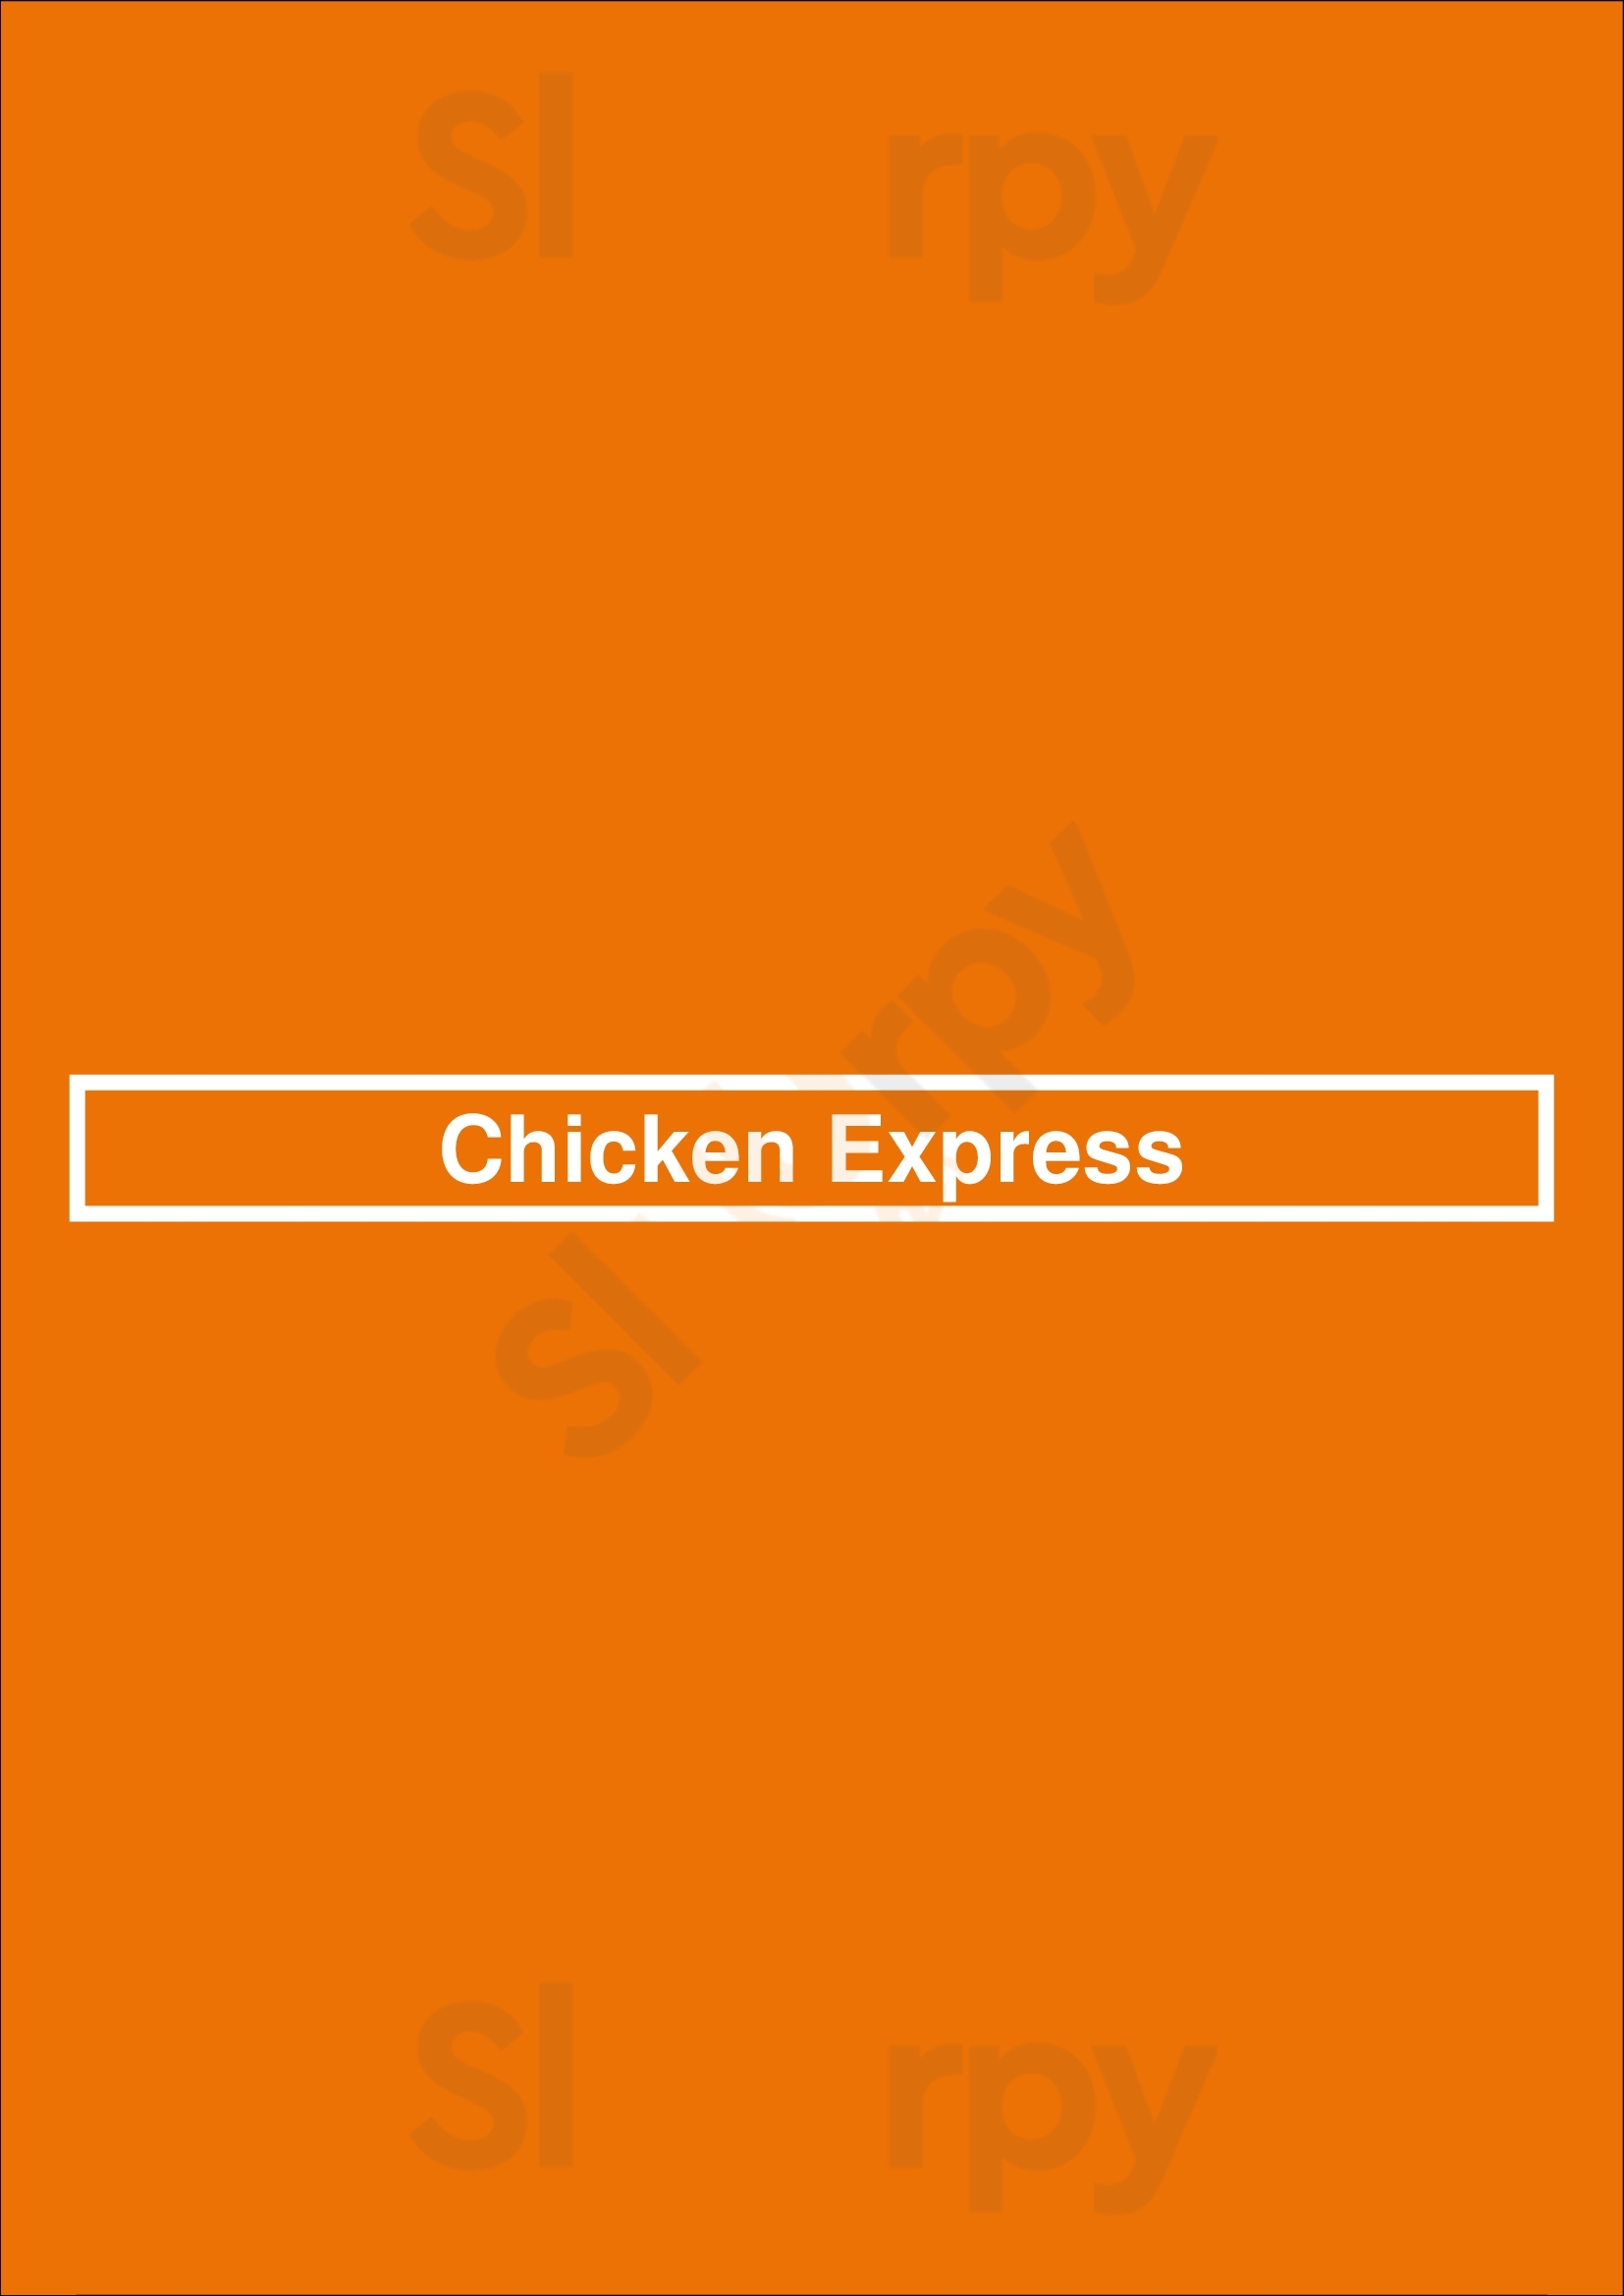 Chicken Express Fort Worth Menu - 1